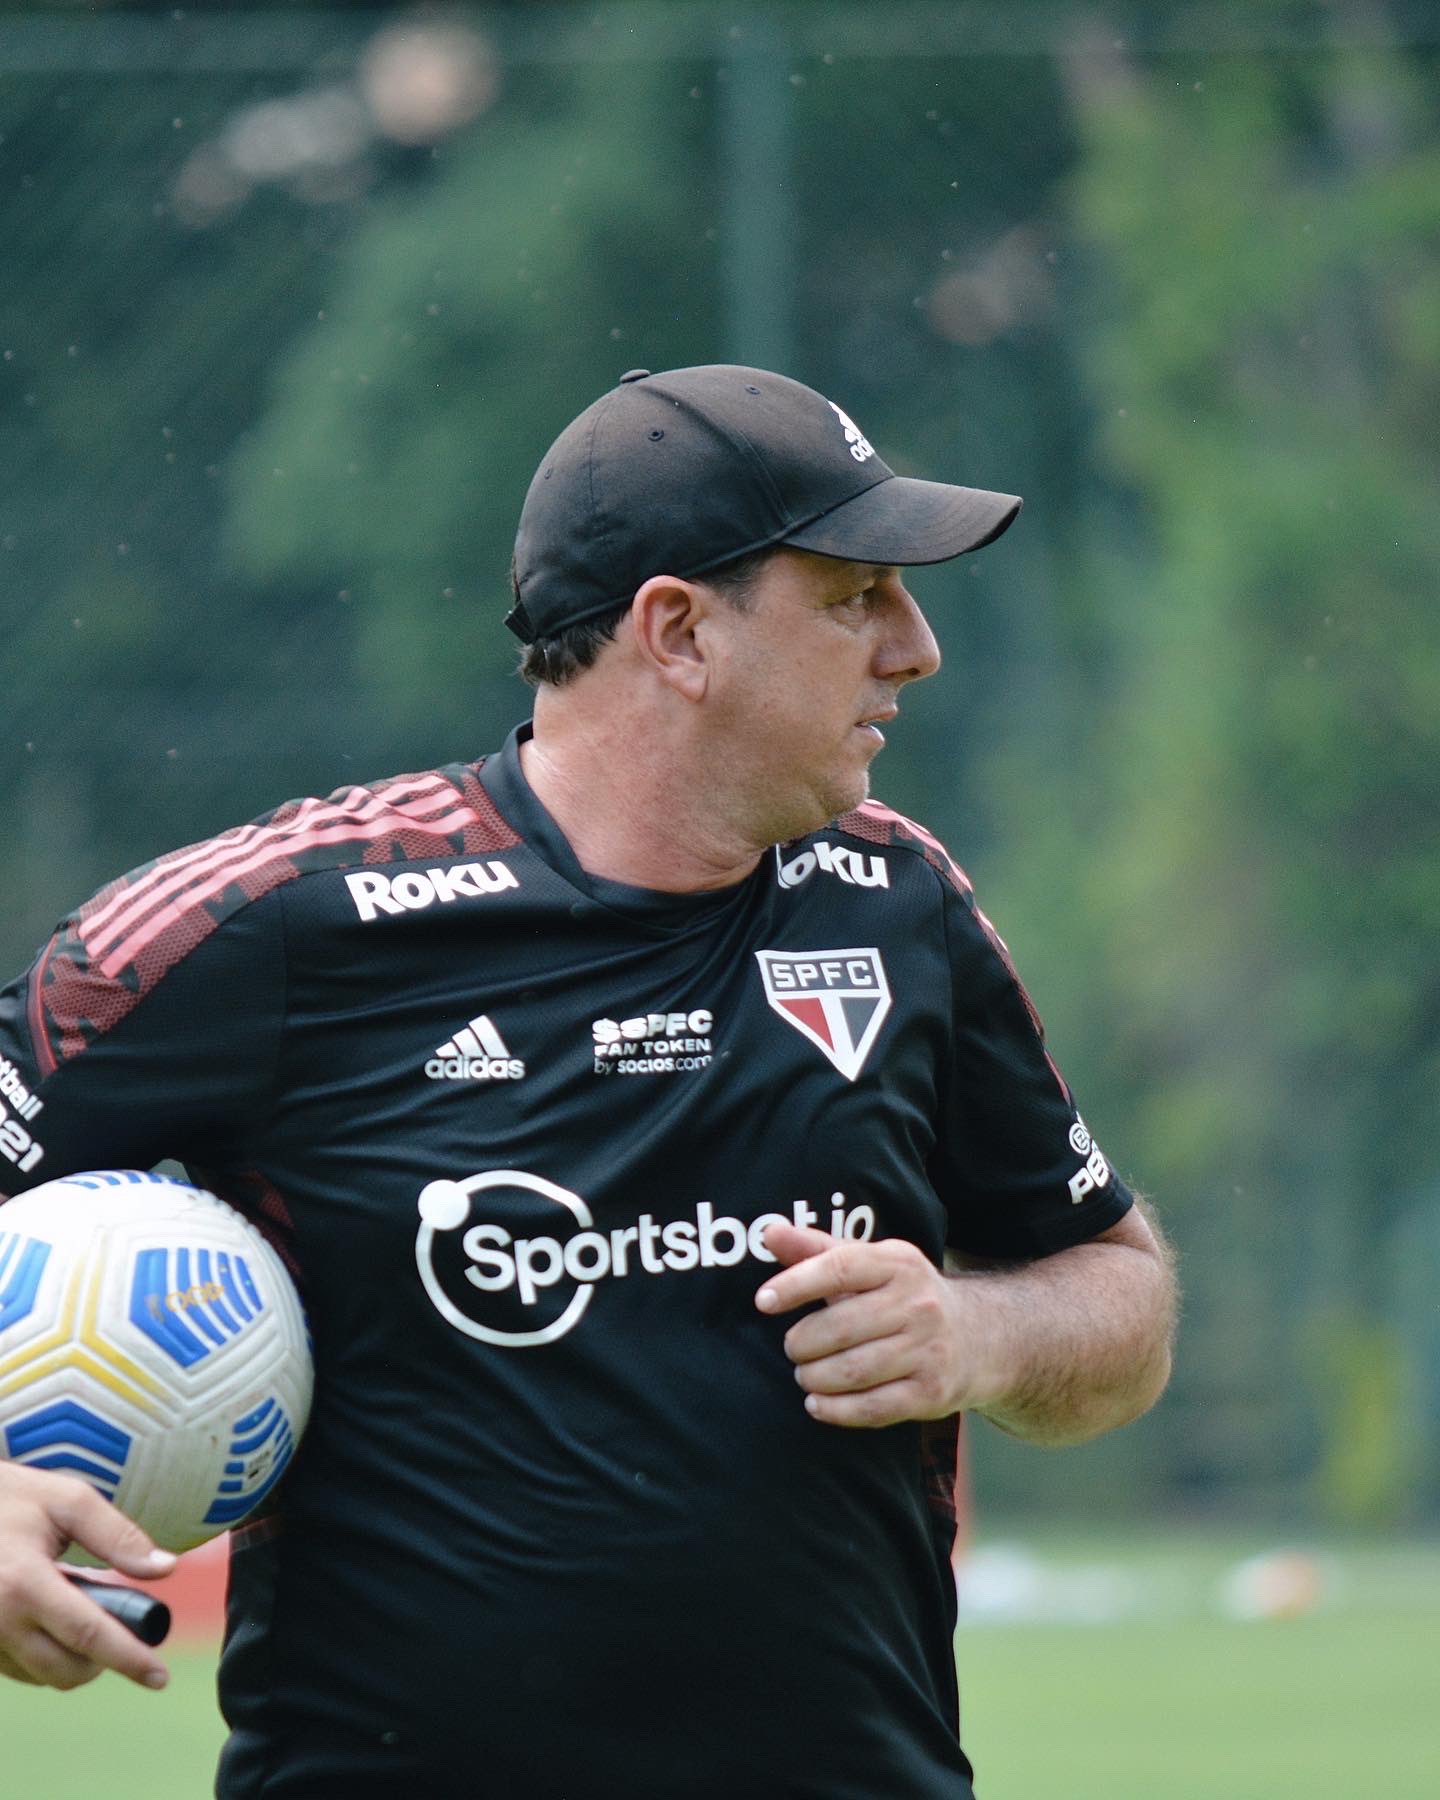 São Paulo se reapresenta no CT da Barra Funda após derrota; veja como foi o treino